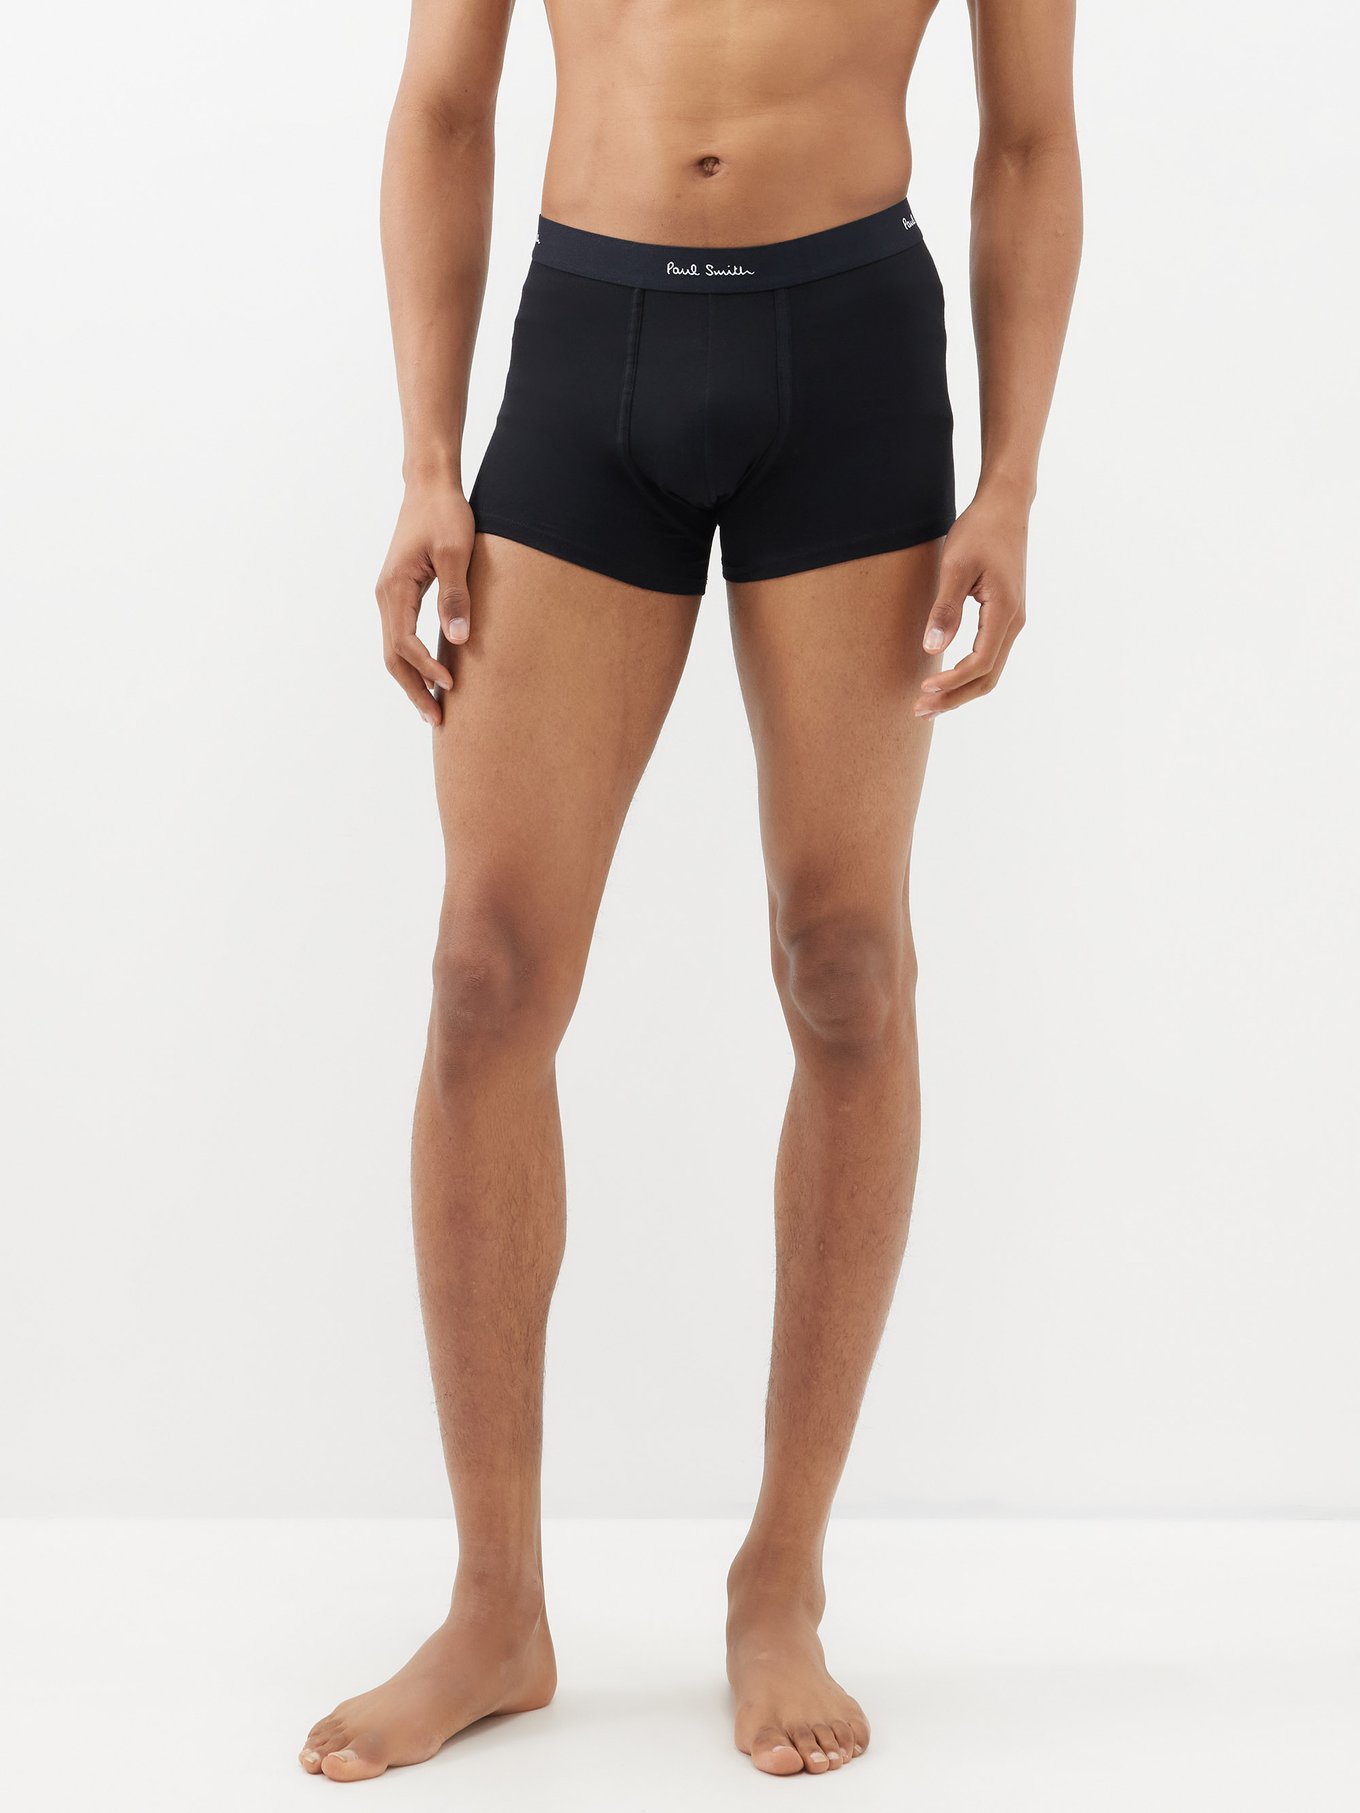 Mr Smith's Men's Underwear - Boxer - Charcoal – Bum-Chums - British Brand -  Men's Underwear - Made in UK